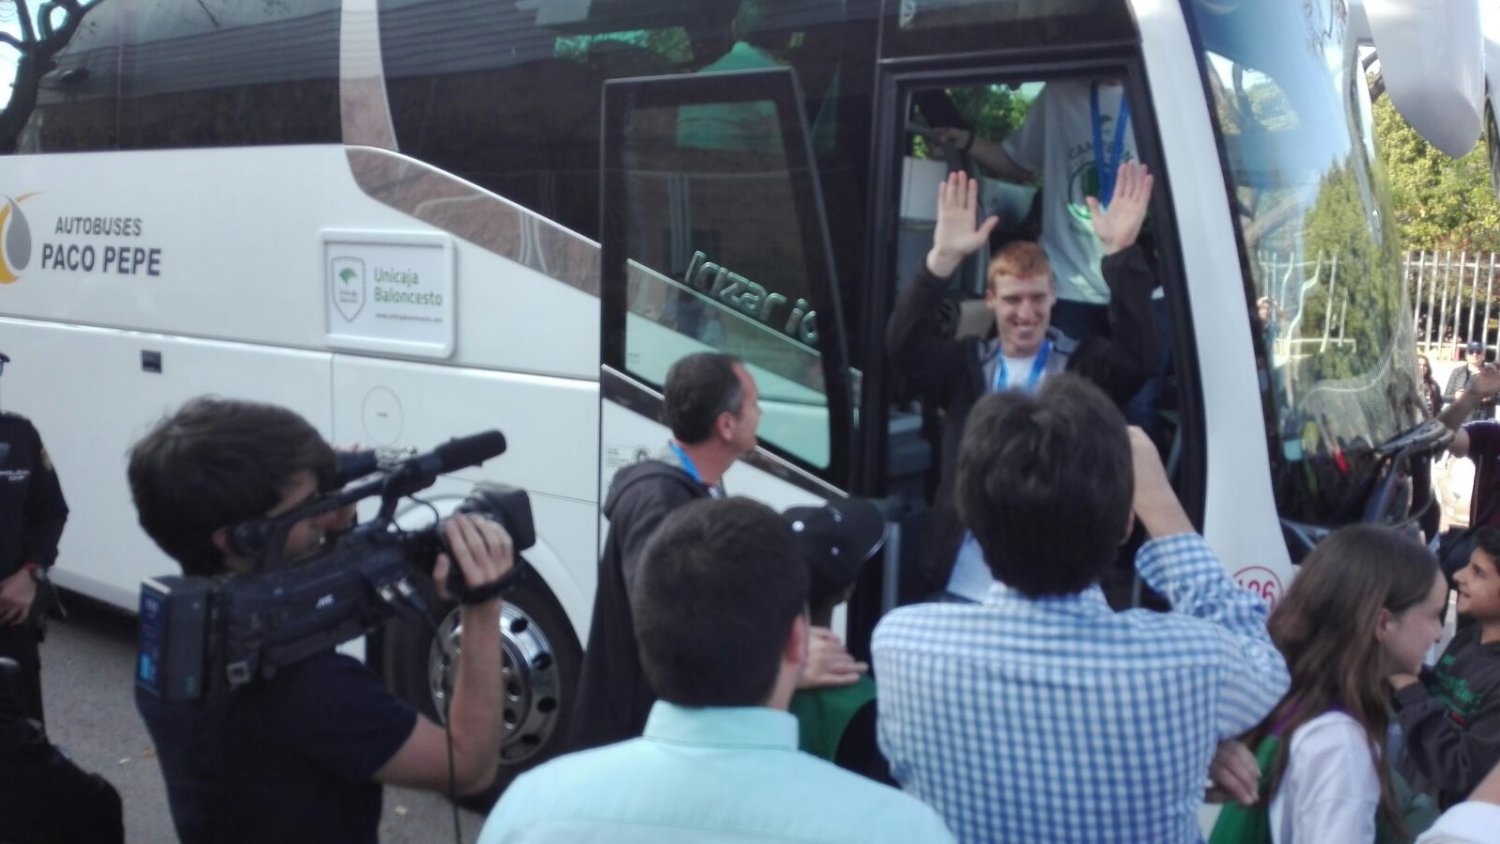 Autobuses Paco Pepe, transporte oficial de la Copa del Rey de Baloncesto de Málaga 2020